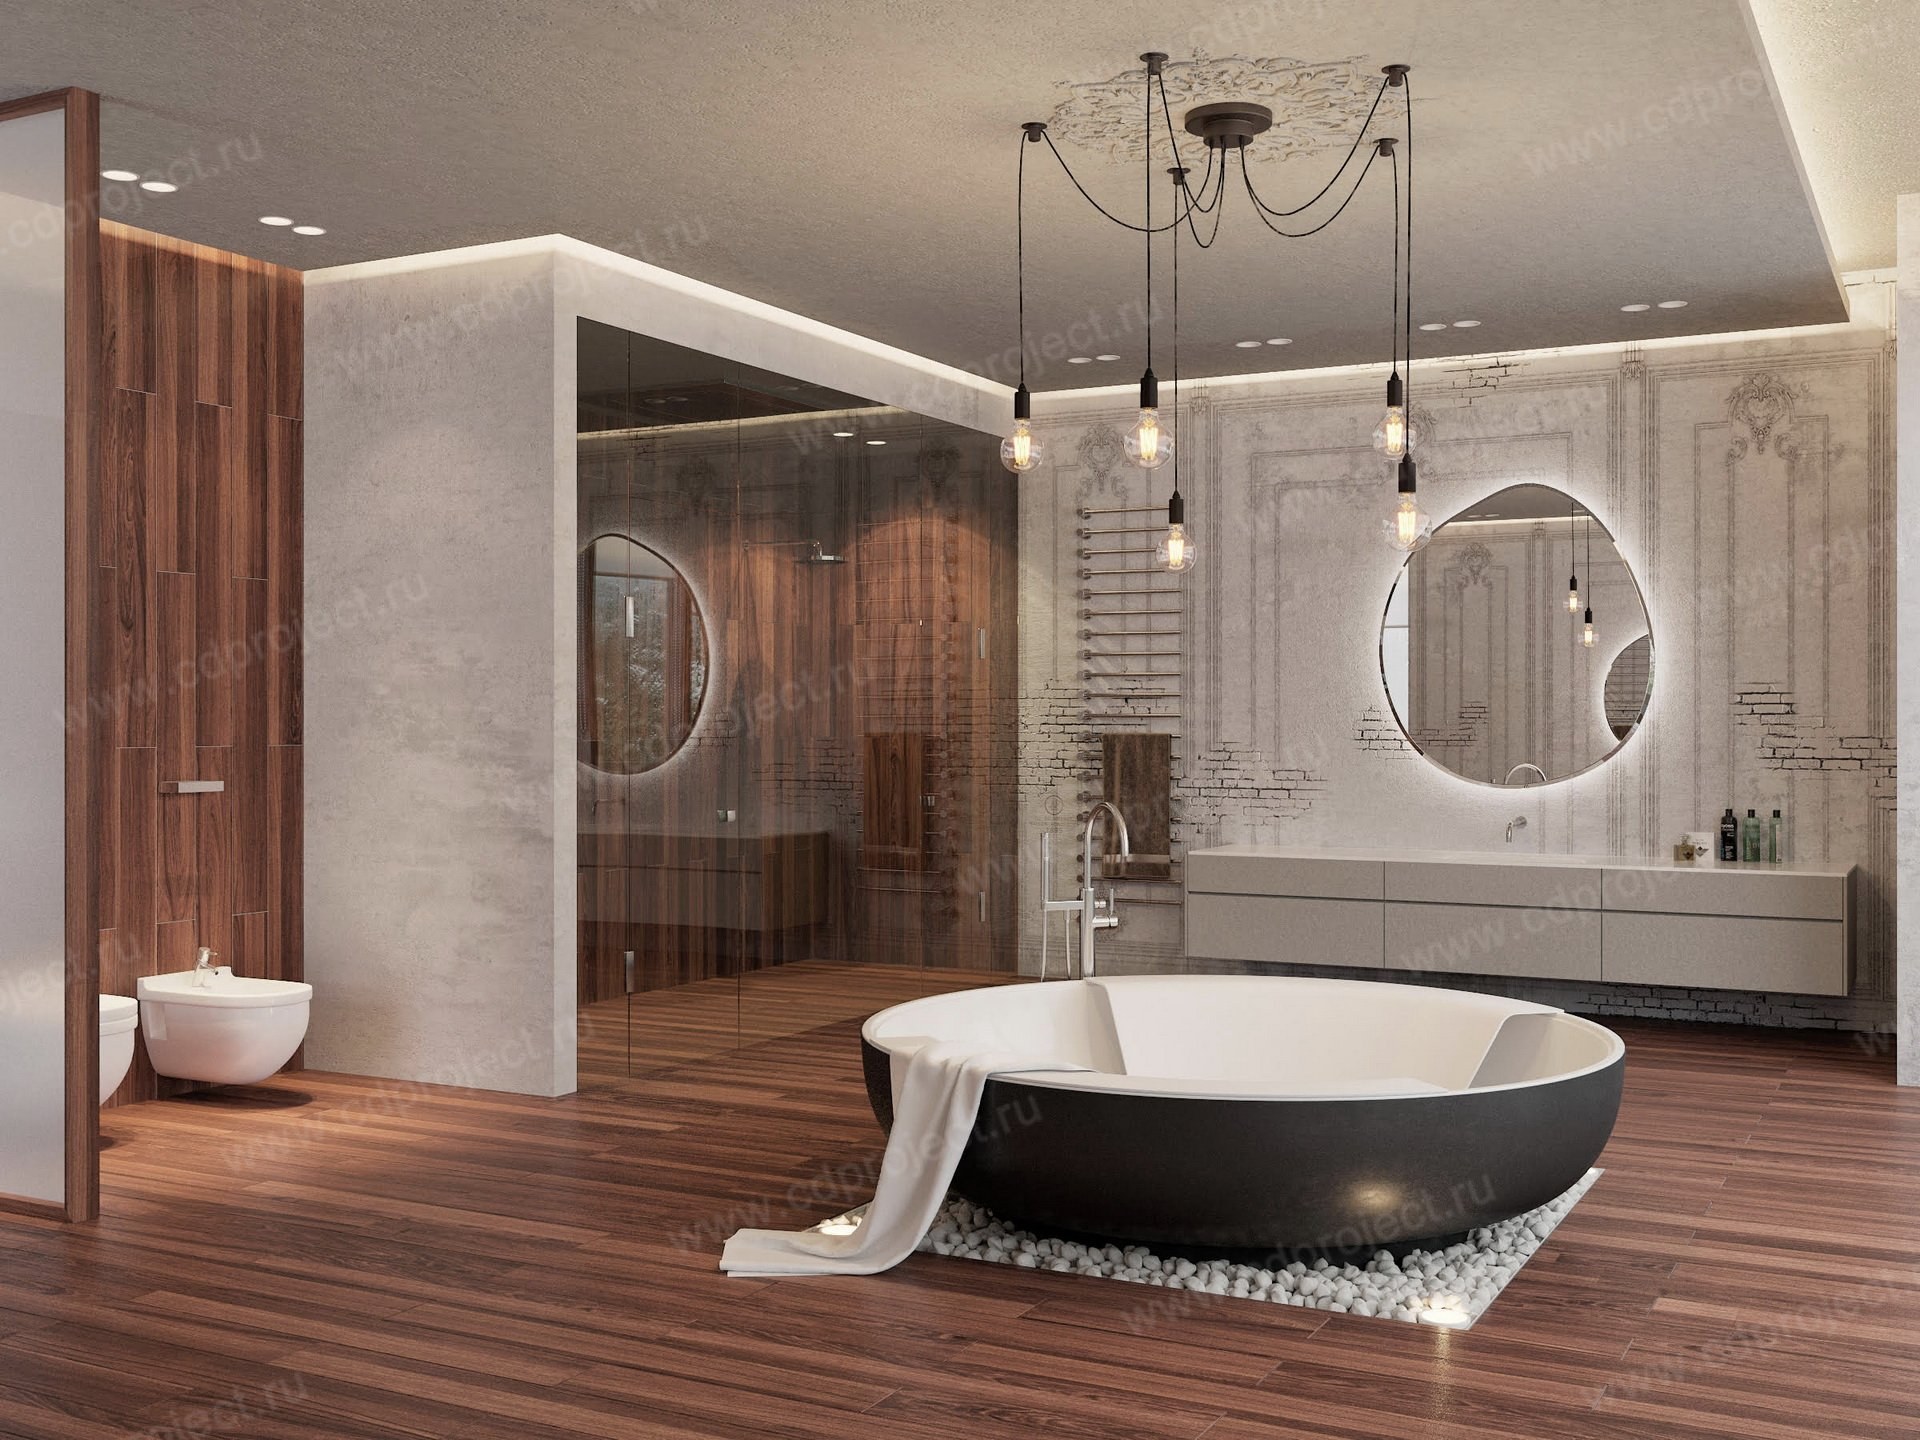  ванные комнаты в современном стиле (51 фото) - красивые .